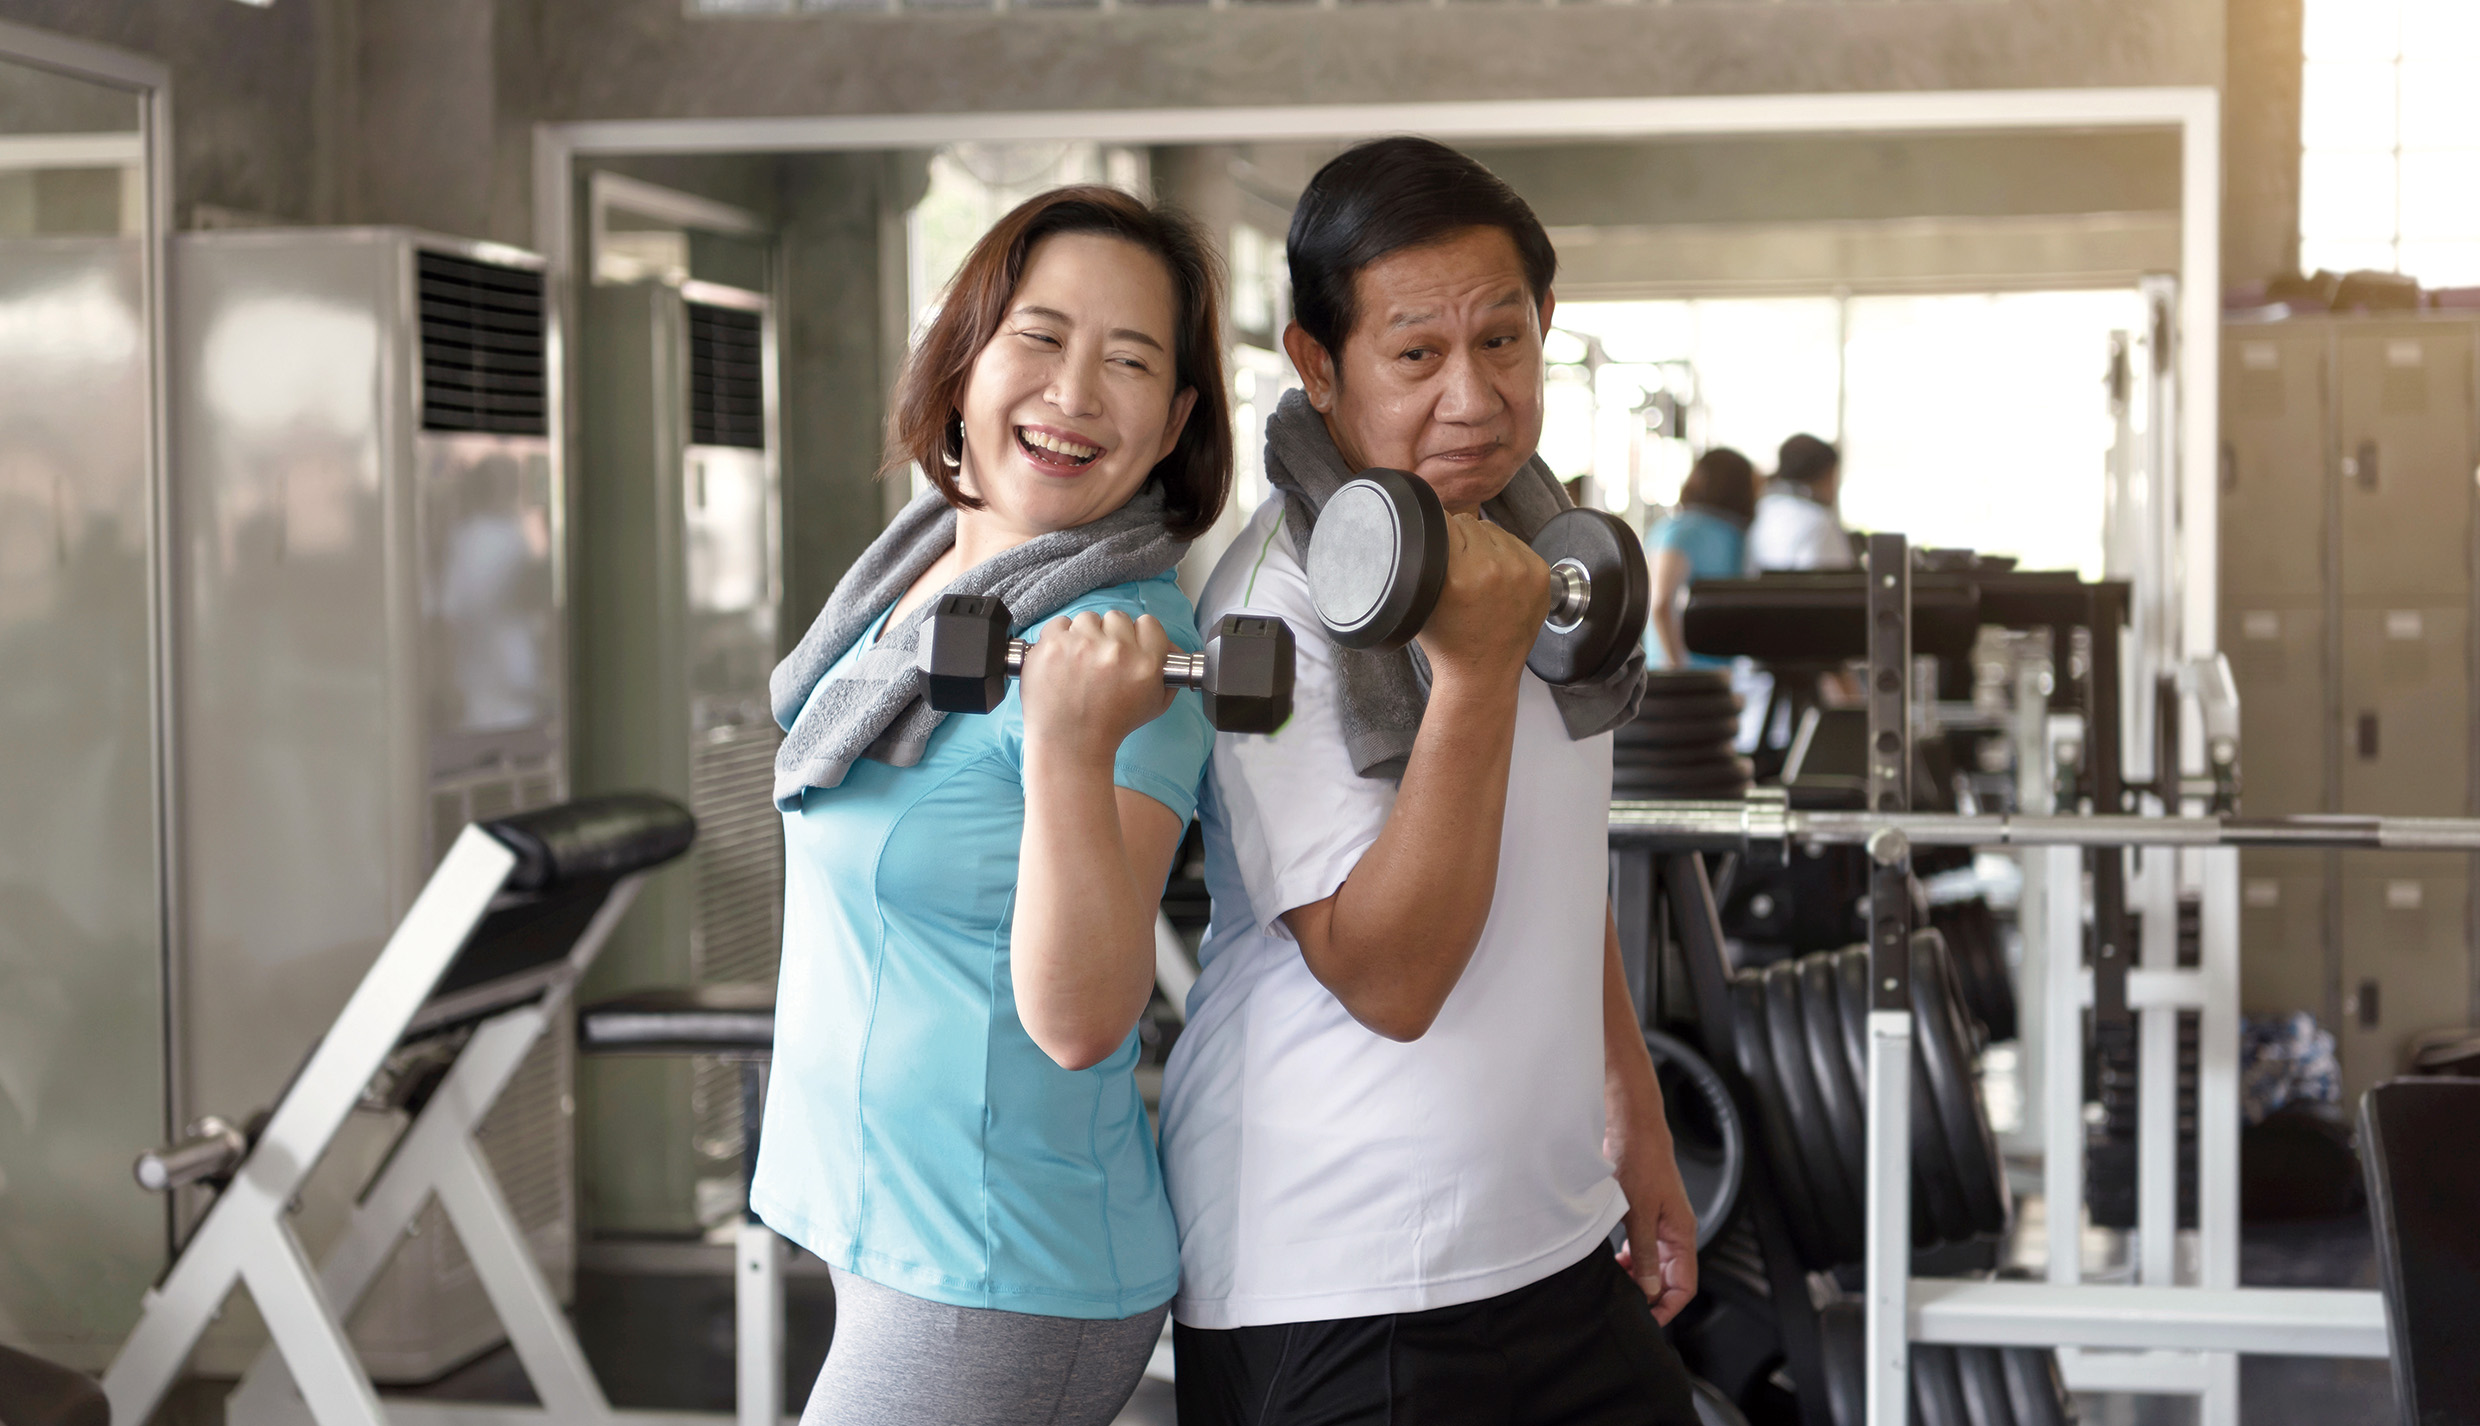 若老年人每周能定期接受肌力訓練，可有效改善坐式生活帶來的肌力或肌耐力不足等困擾，兼能維持身體組成、身體功能及生活品質。